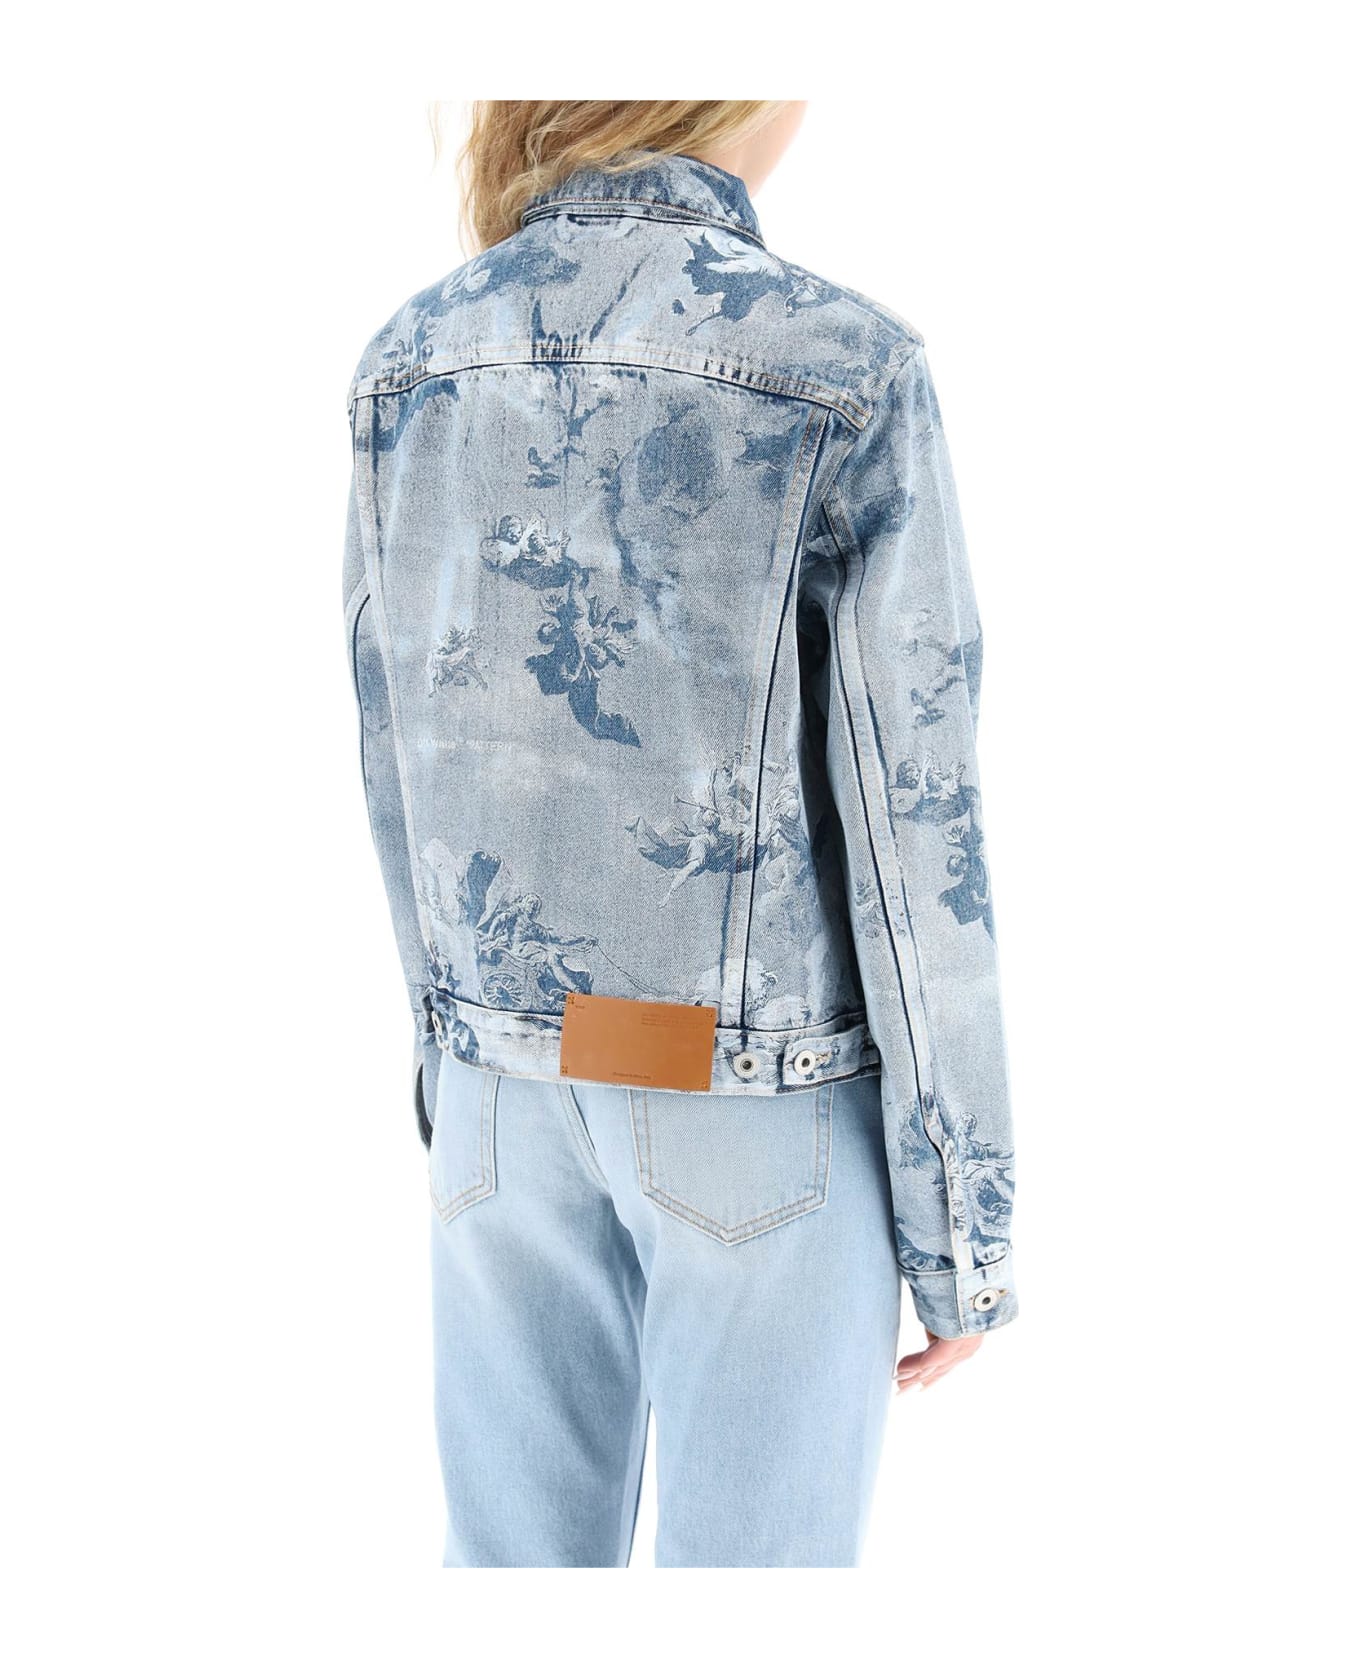 Off-White Printed Denim Jacket - Blu ジャケット